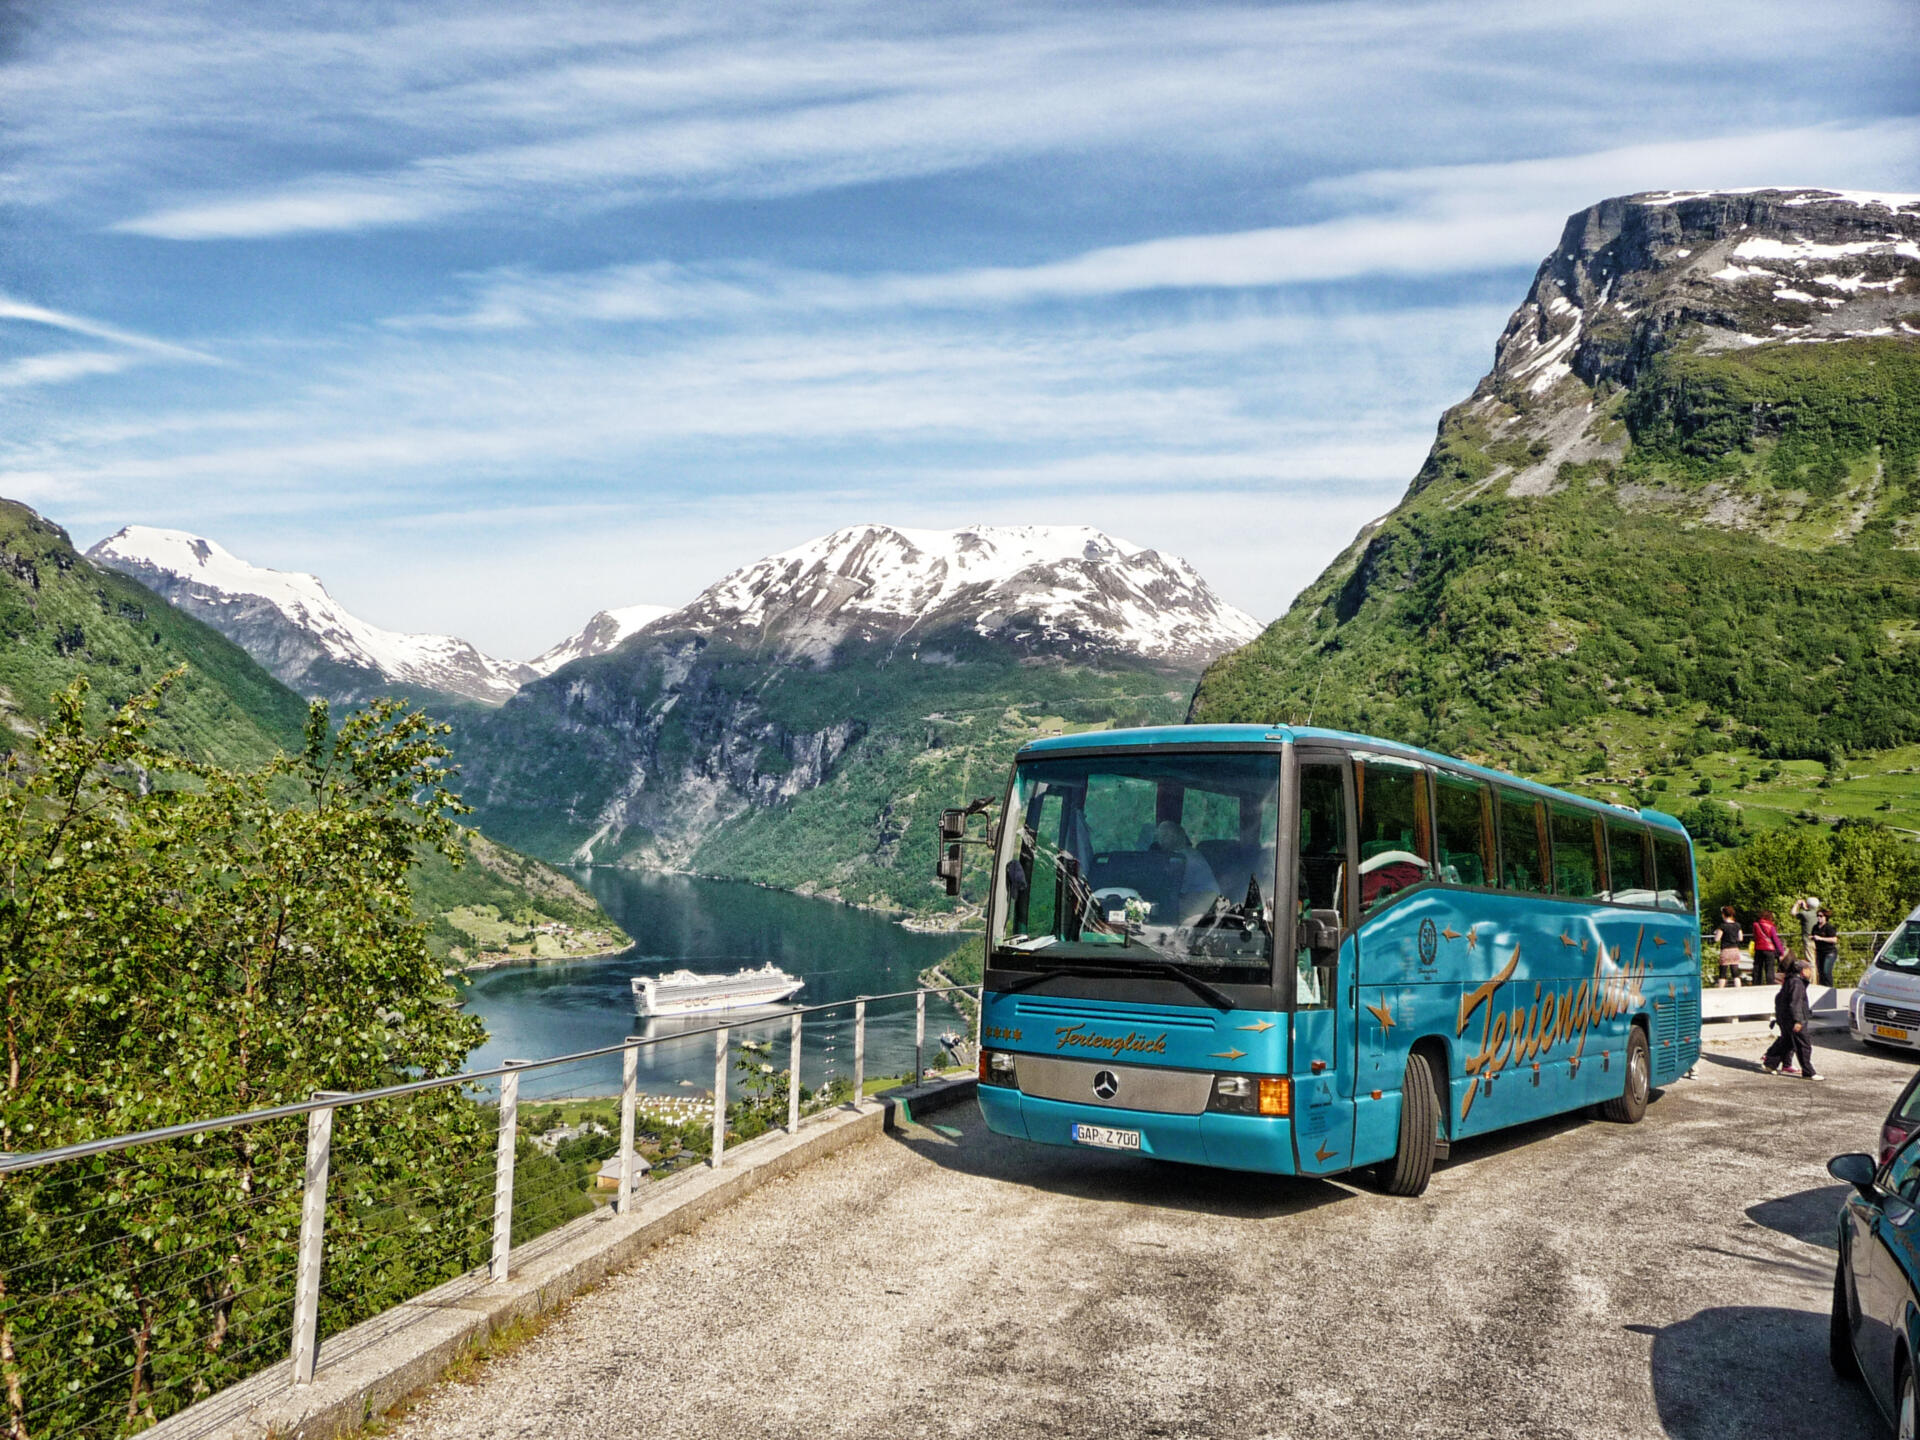 In vielen anderen Ländern muss man stundenlang wandern, um solch traumhafte und einsame Landschaften zu sehen. In Norwegen dagegen sitzt man bequem im Bus und lässt Gipfel und Gletscher, Fjorde und Wasserfälle einfach an sich vorbeiziehen.